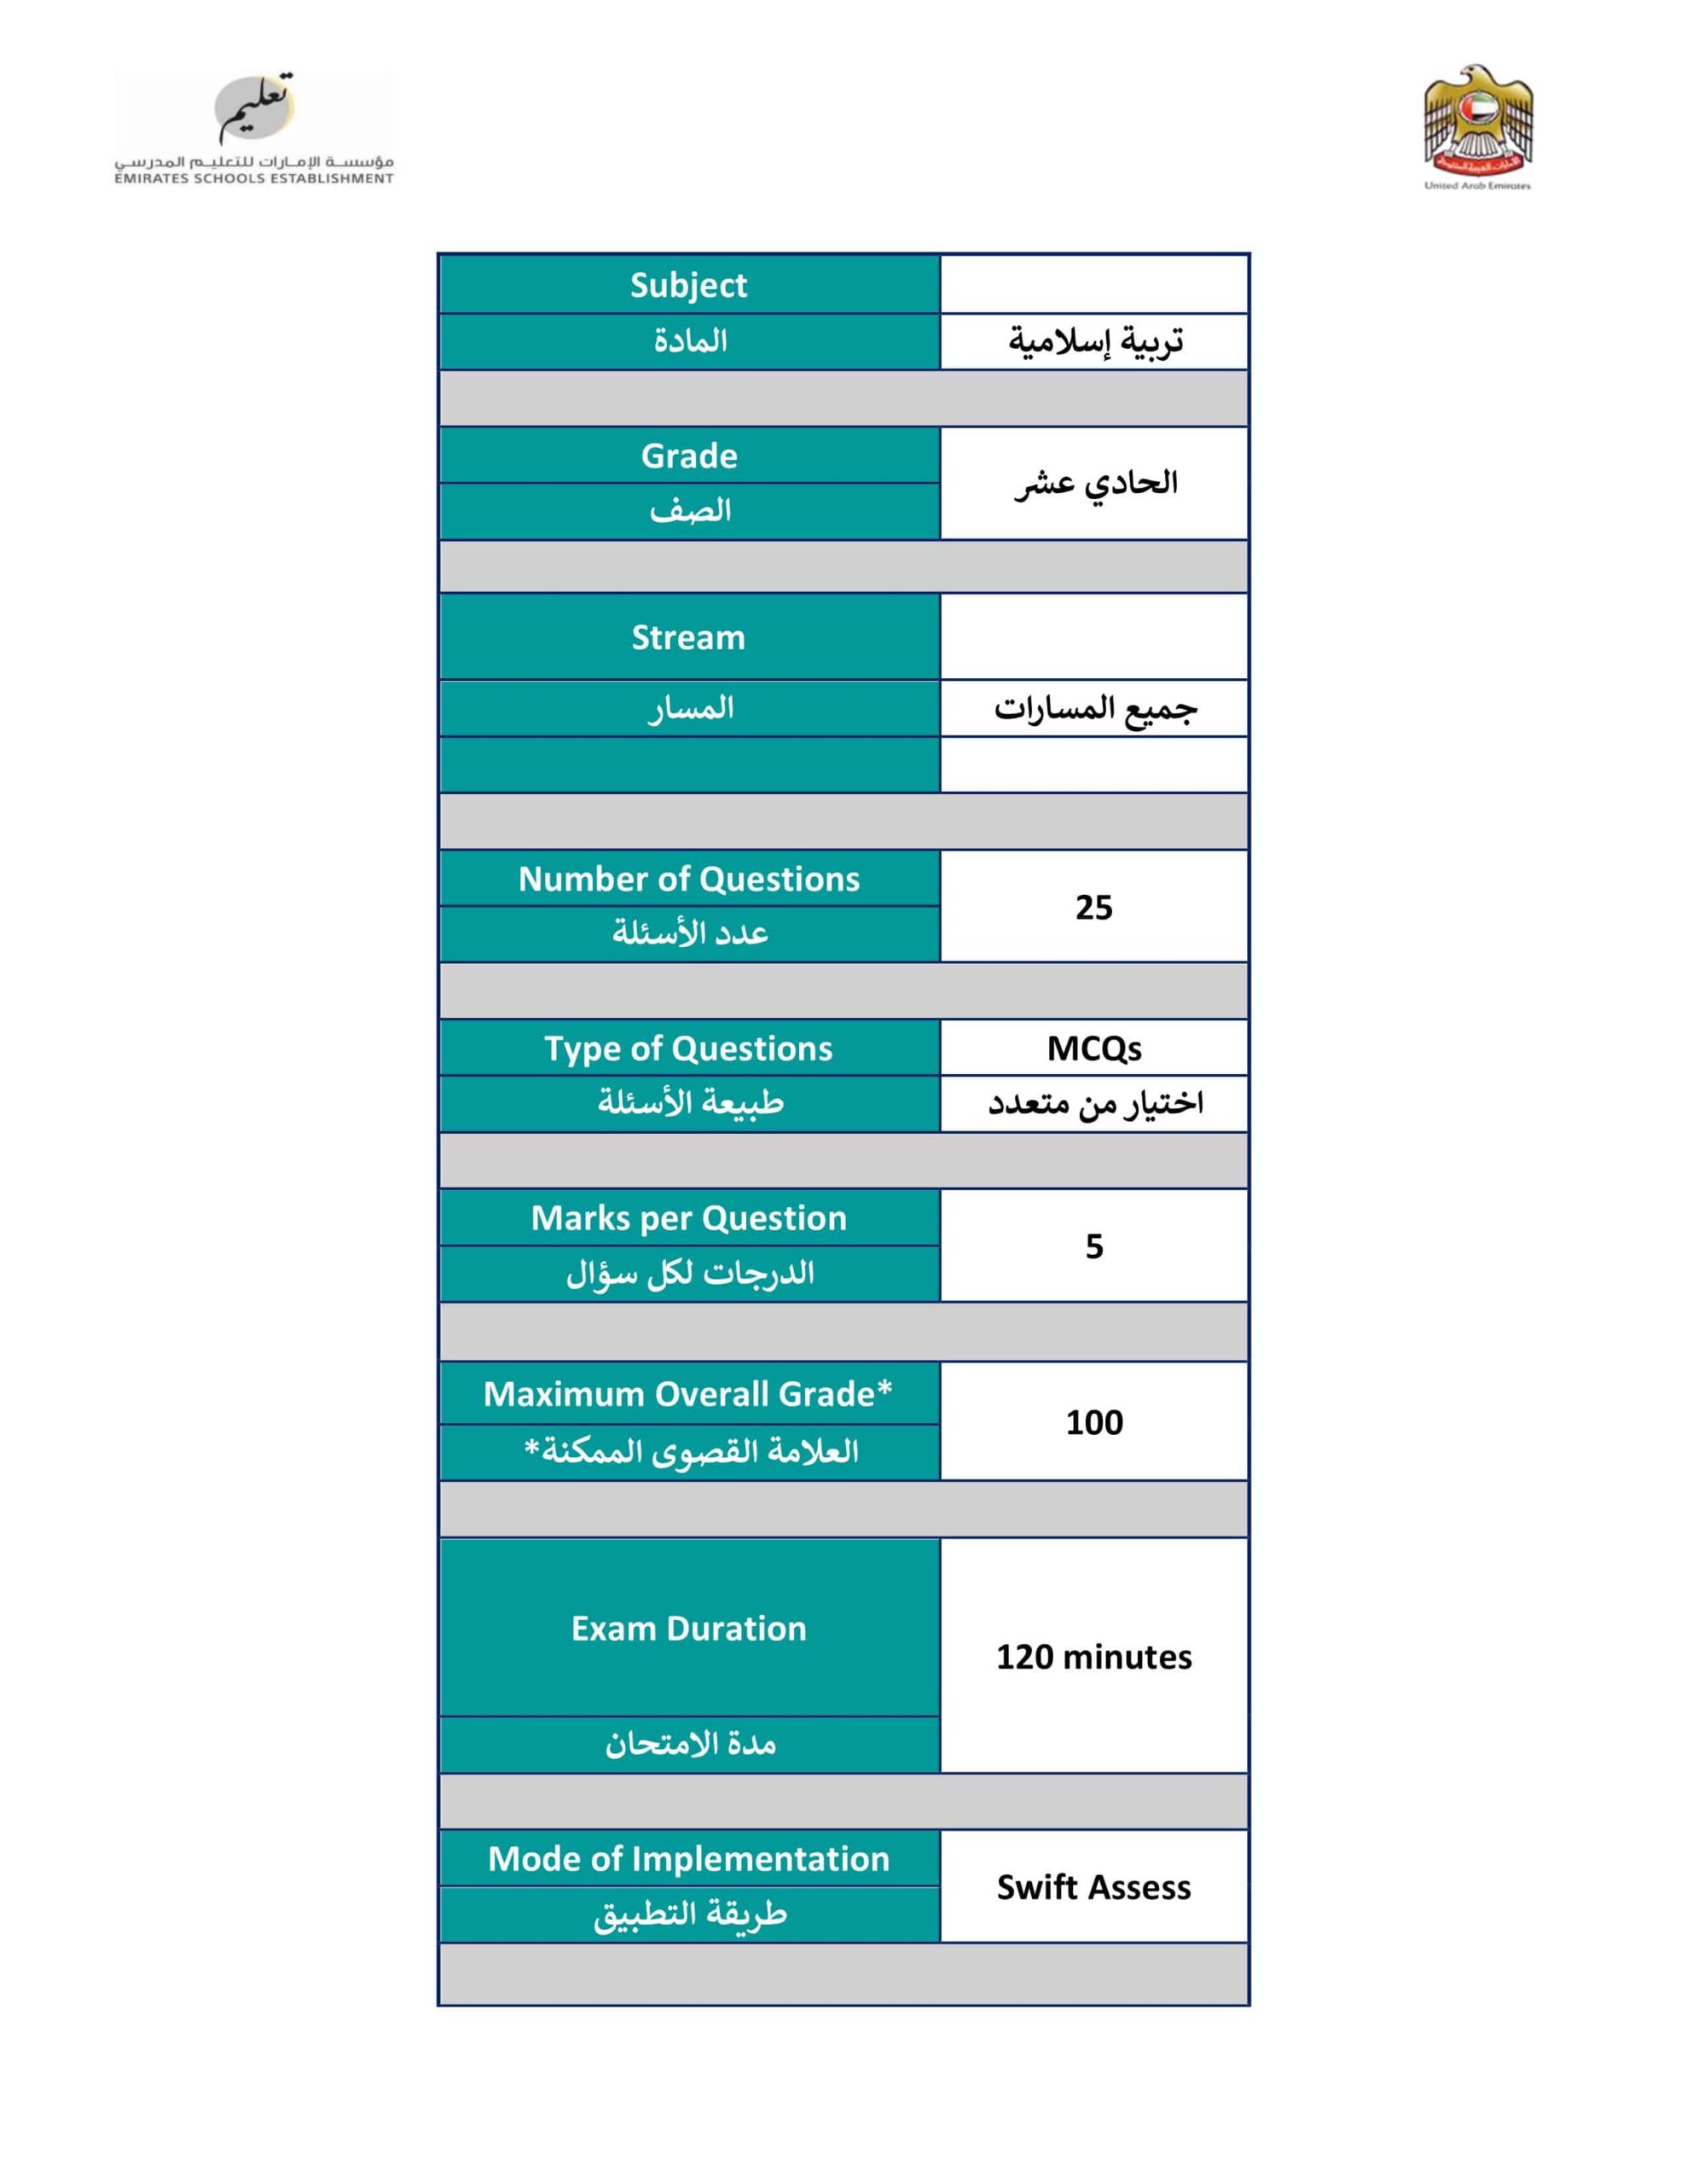 هيكل امتحان التربية الإسلامية الصف الحادي عشر الفصل الدراسي الثالث 2021-2022